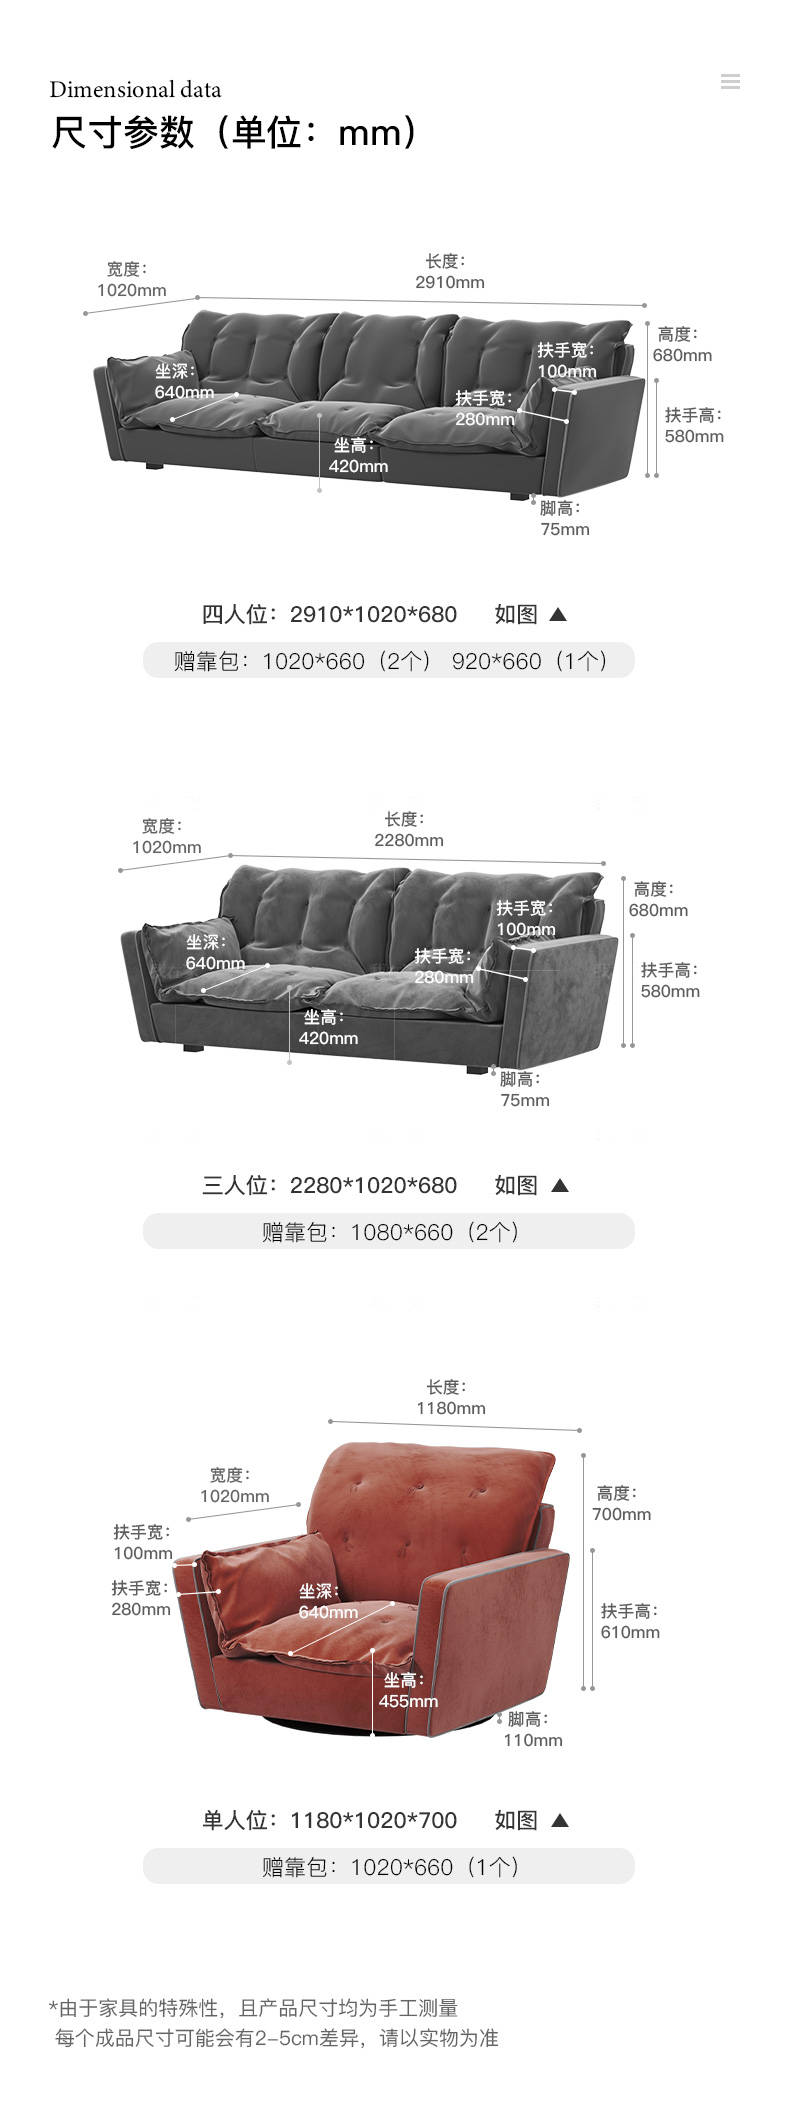 意式极简风格摇篮布艺沙发的家具详细介绍